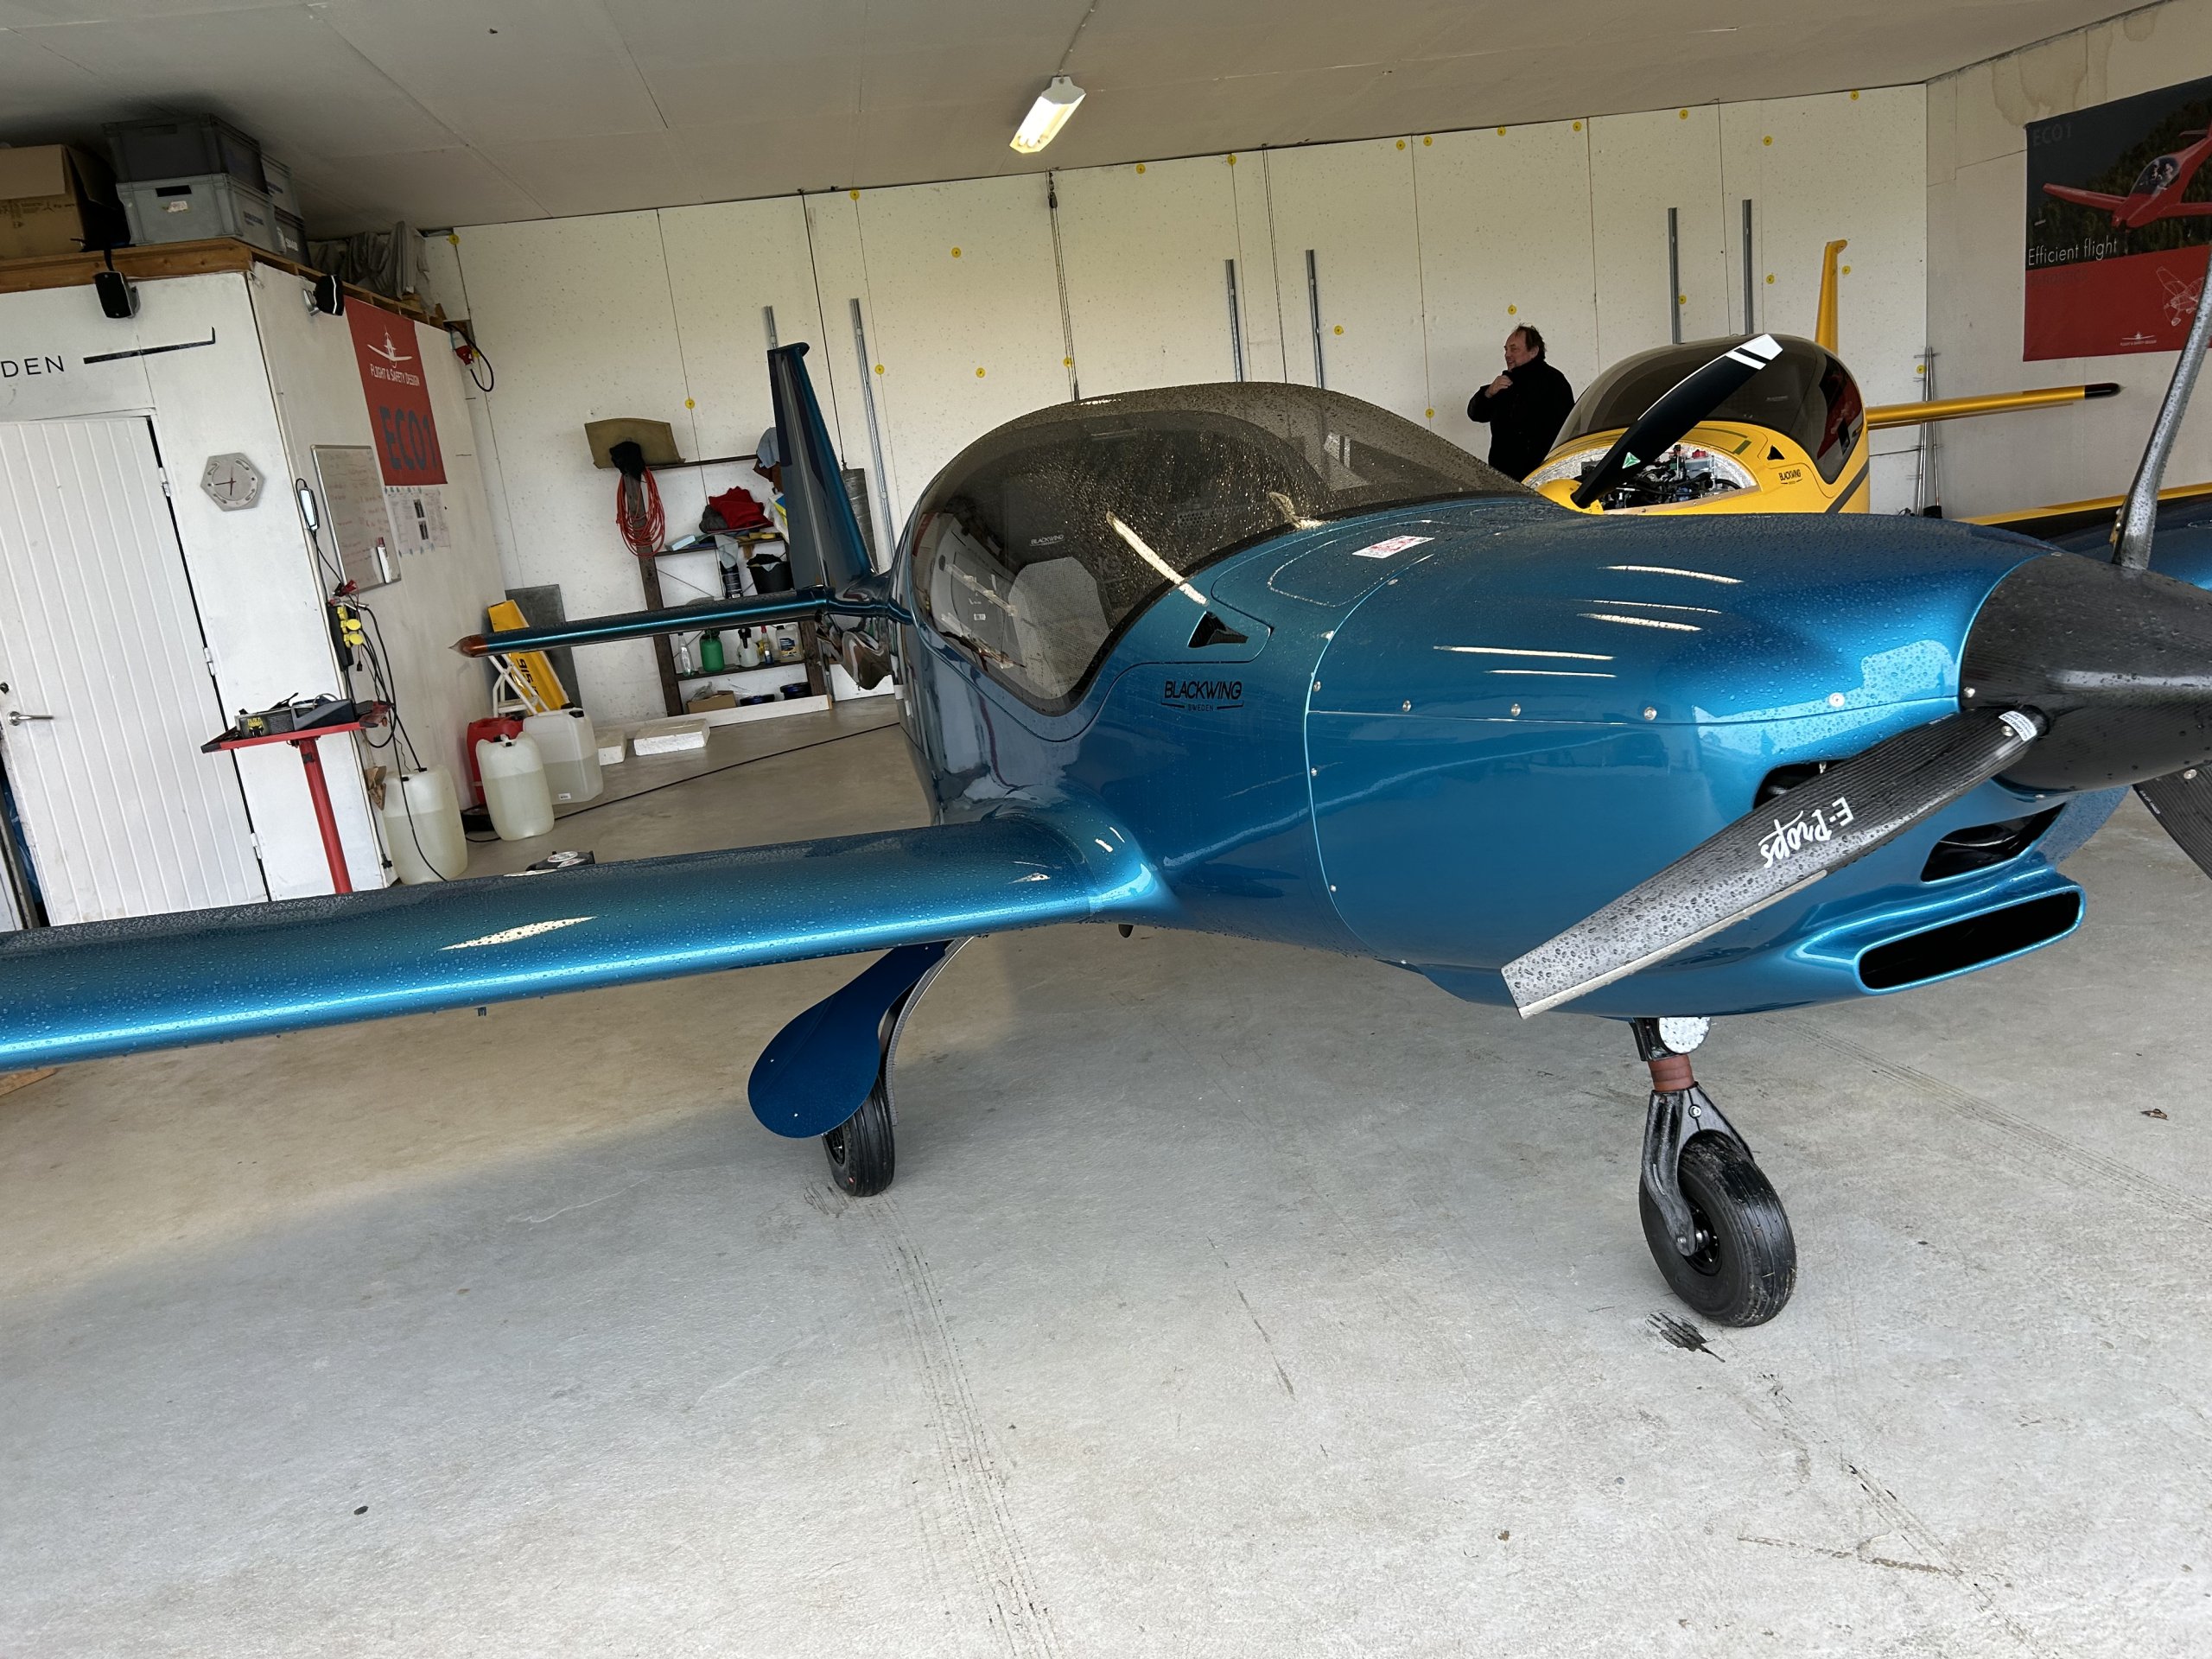 Blackwing 600RG in hangar